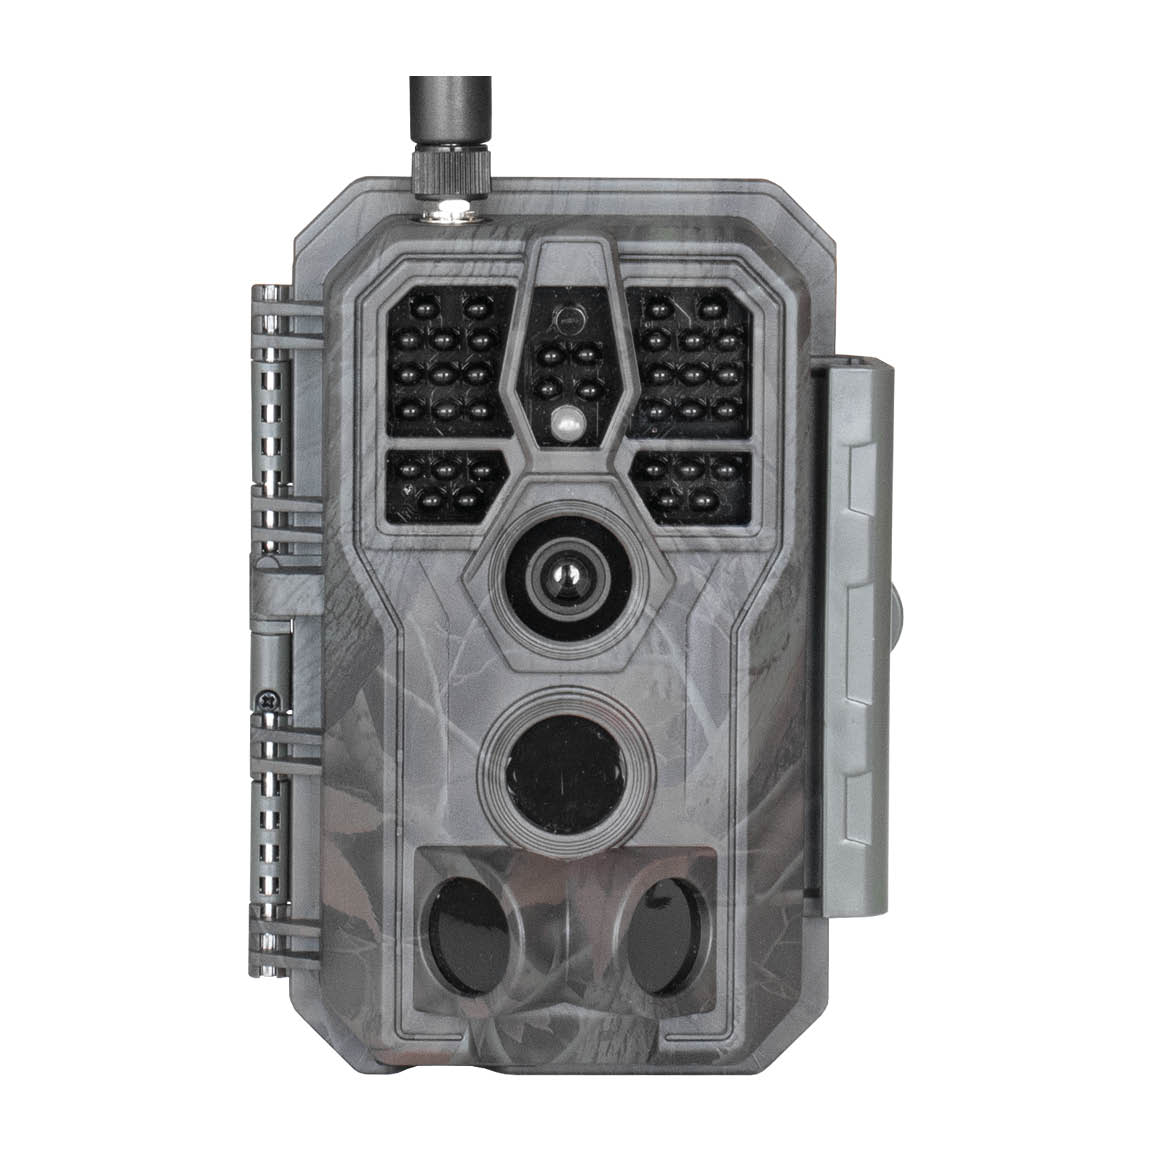 Pack 3 cámaras de caza GardePro X50 con pilas gratis